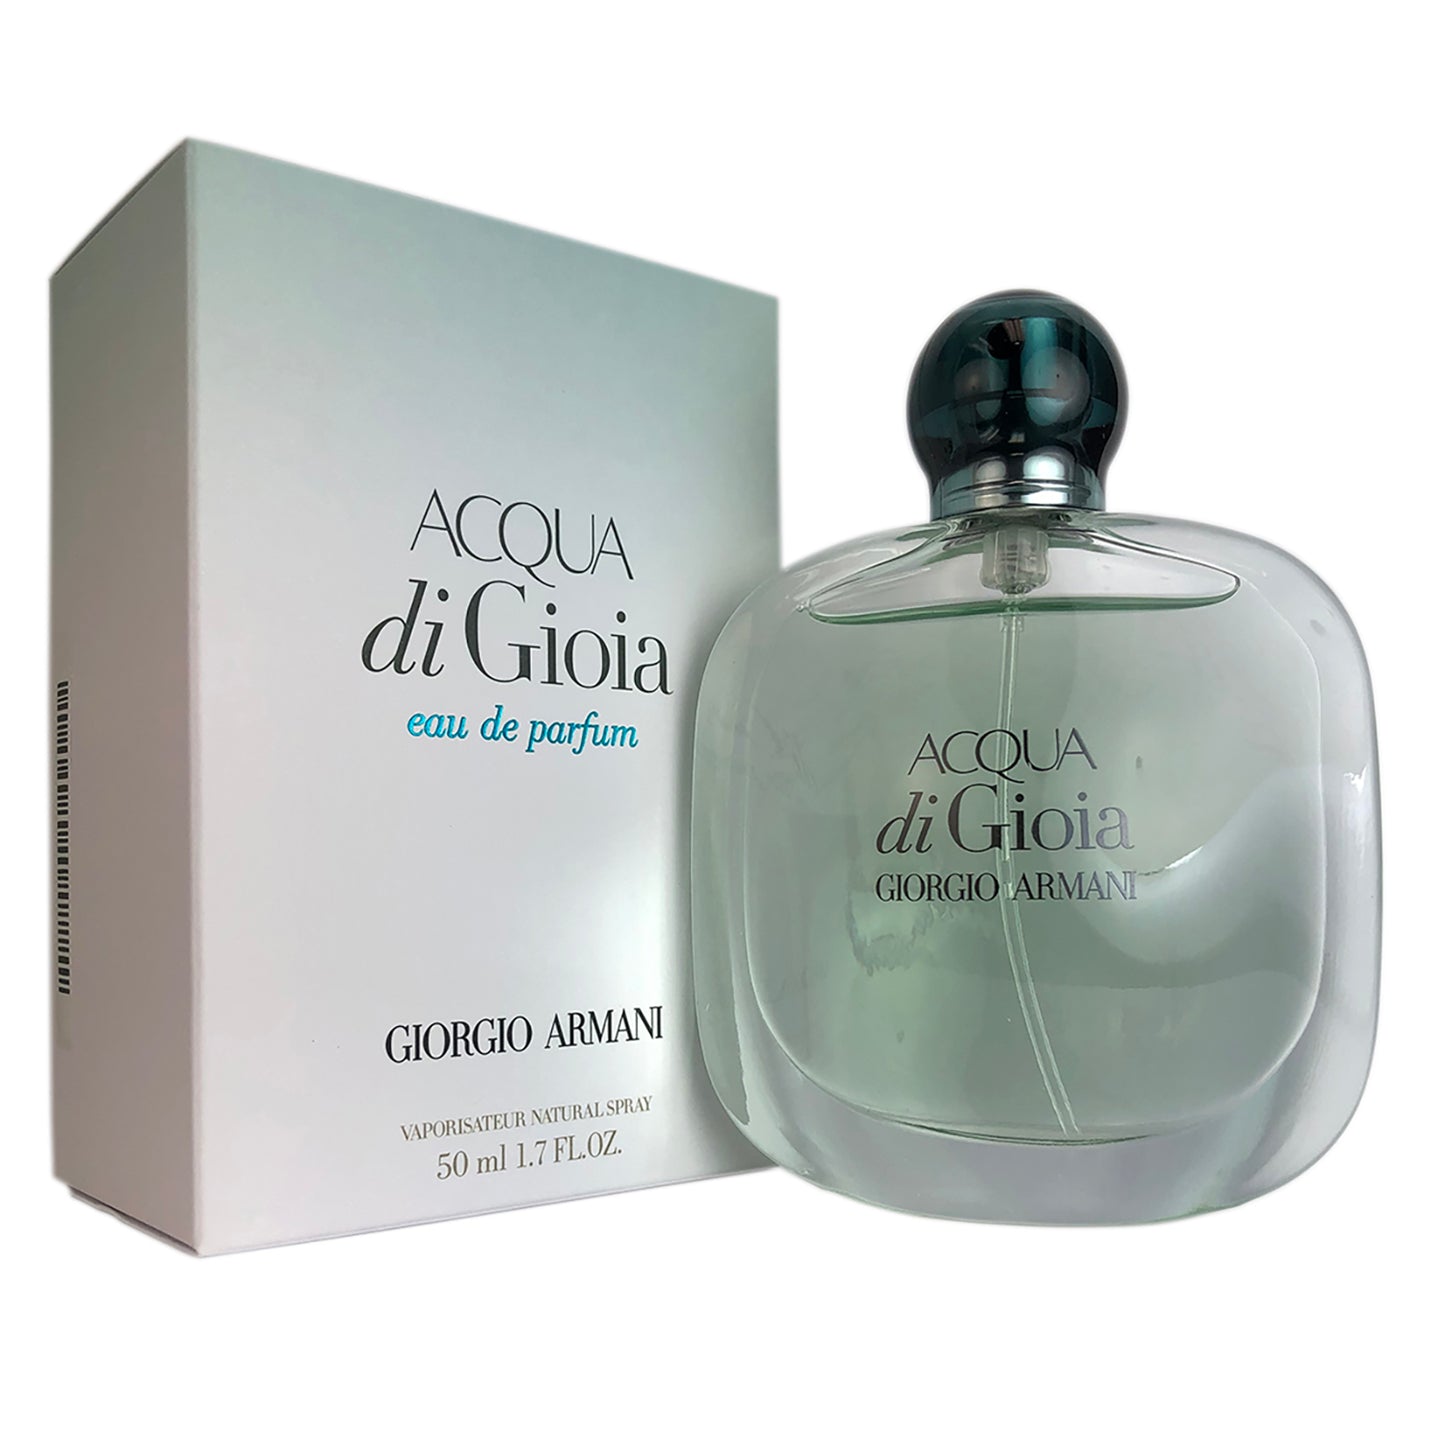 Acqua Di Gioia for Women by Giorgio Armani 1.7 oz Eau de Parfum Spray